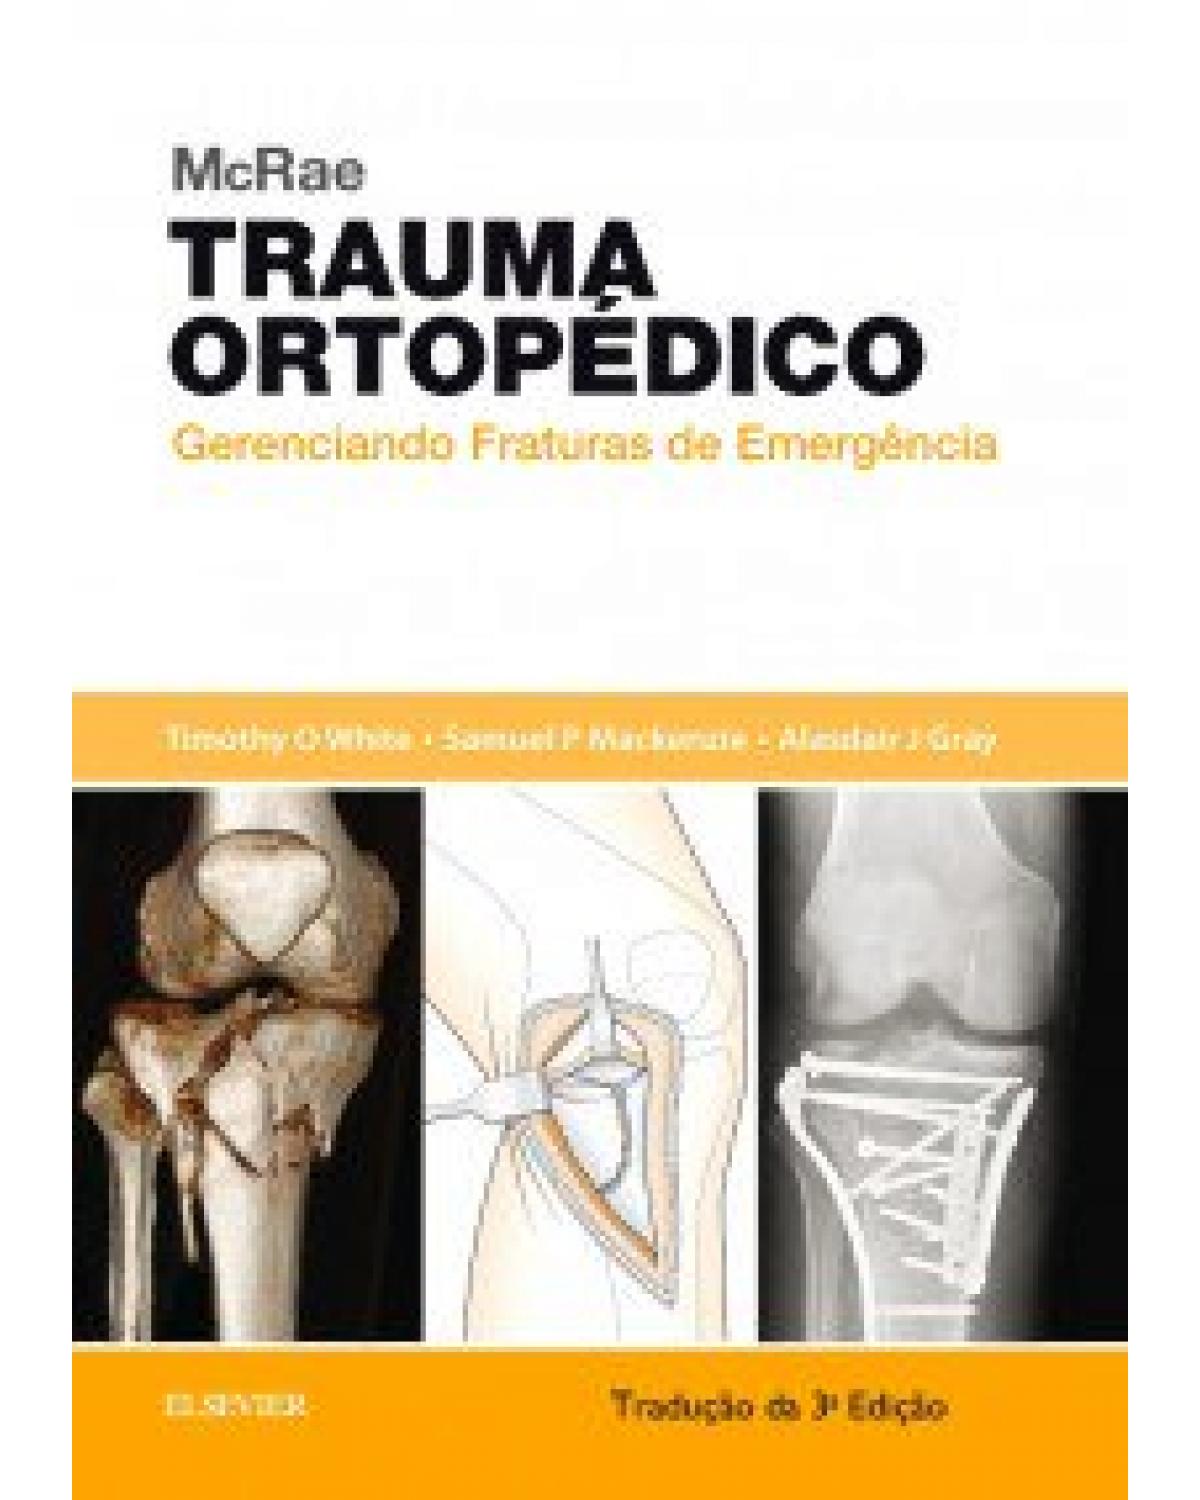 McRae - Trauma ortopédico - gerenciando fraturas de emergência - 3ª Edição | 2017